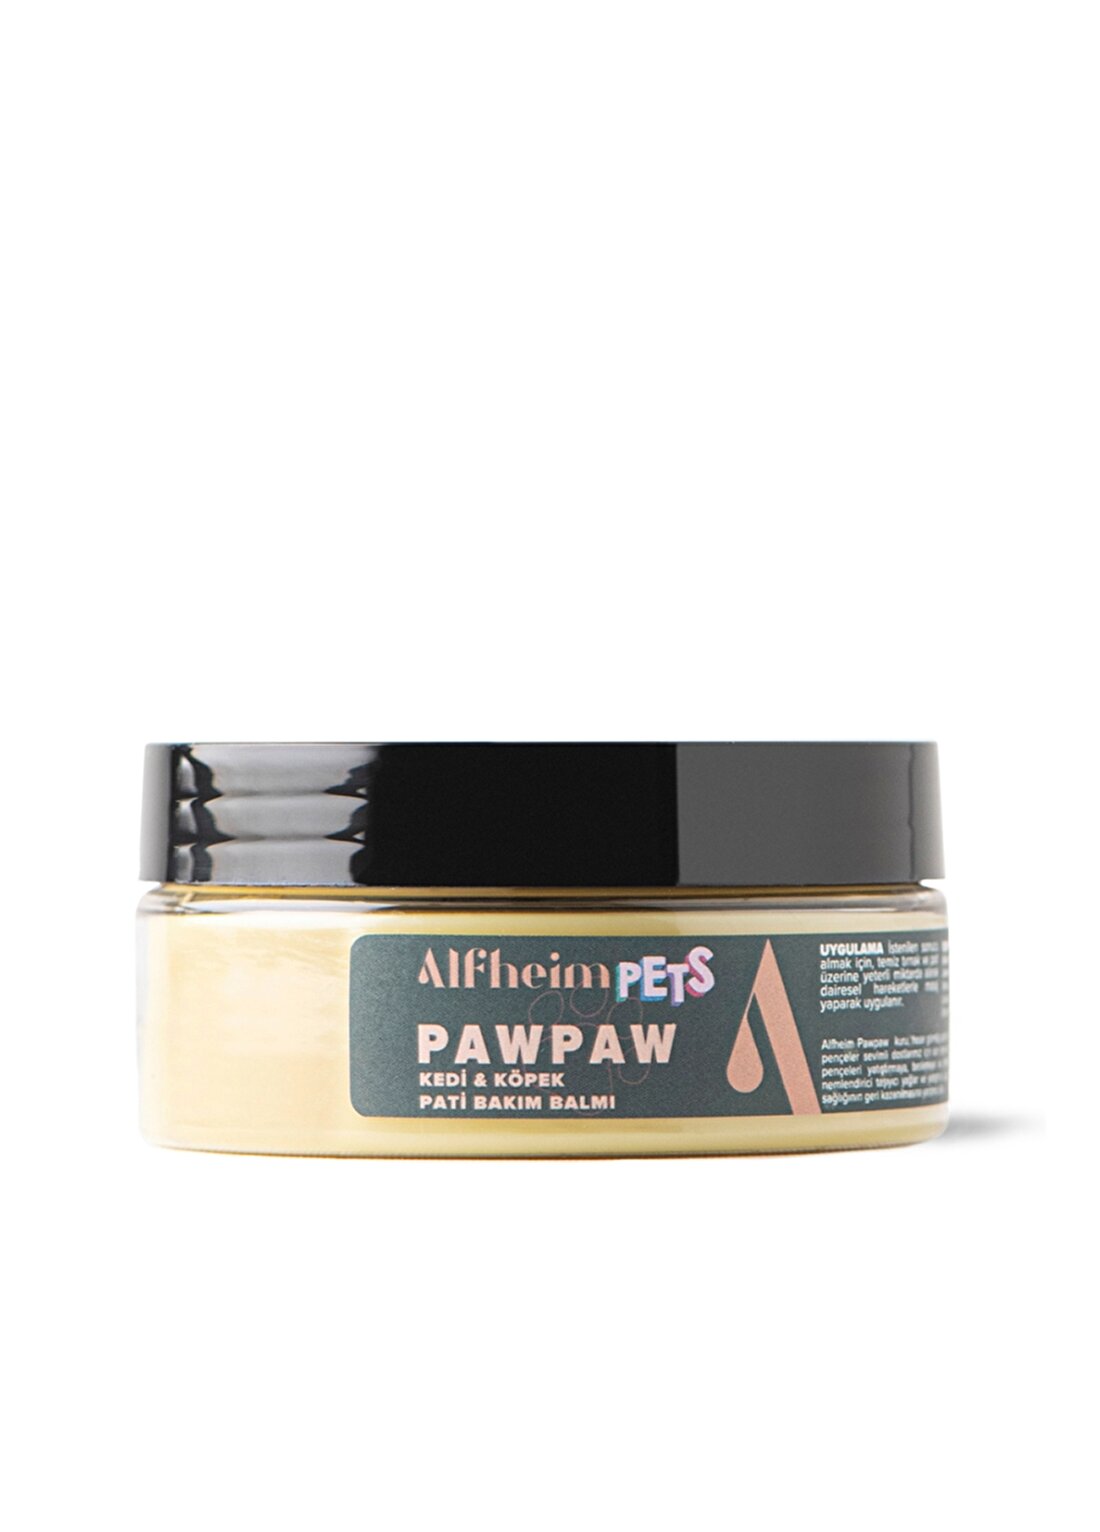 Alfheim Pawpaw Pati Bakım Balmı/ Kedi Köpek Pati Bakımı/ Hasarlardan Korur/ İyileşmeyi Destekler/ 150 Ml